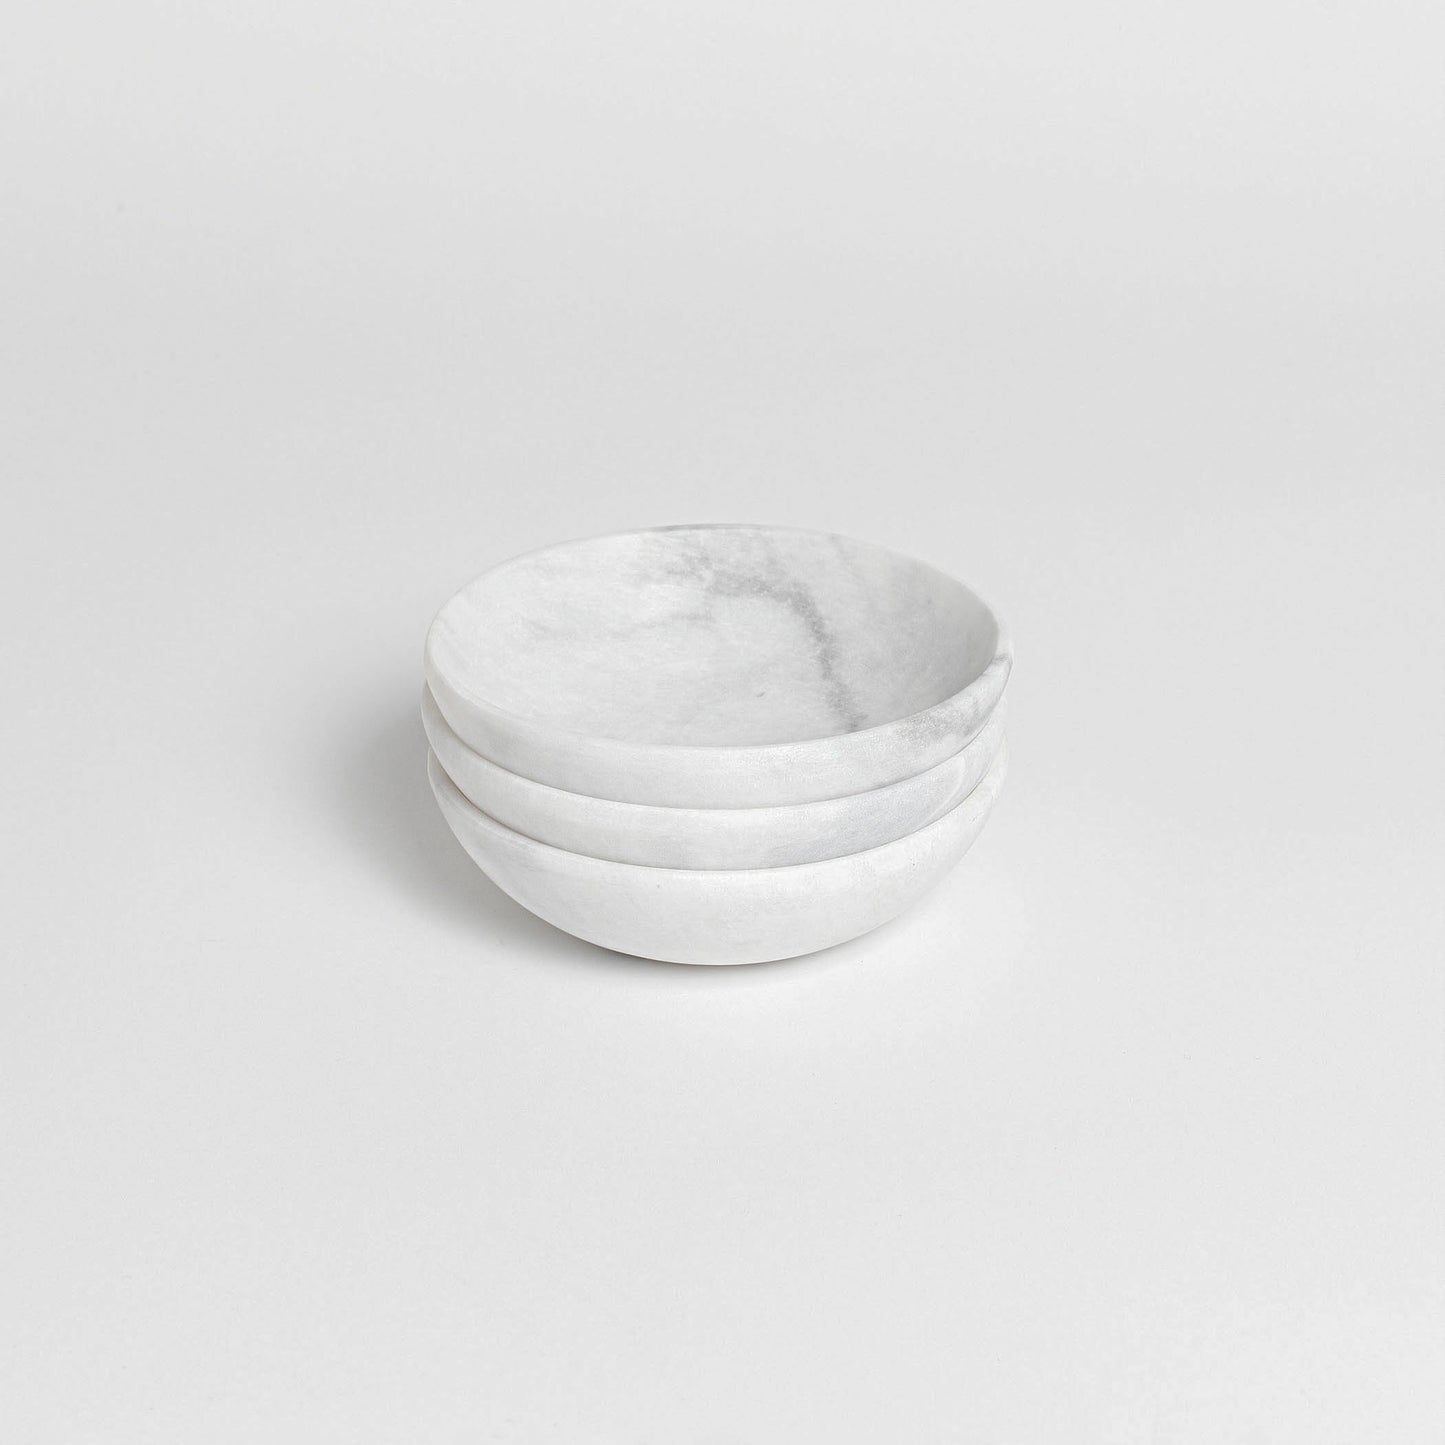 Medium Bowl - Arctic White